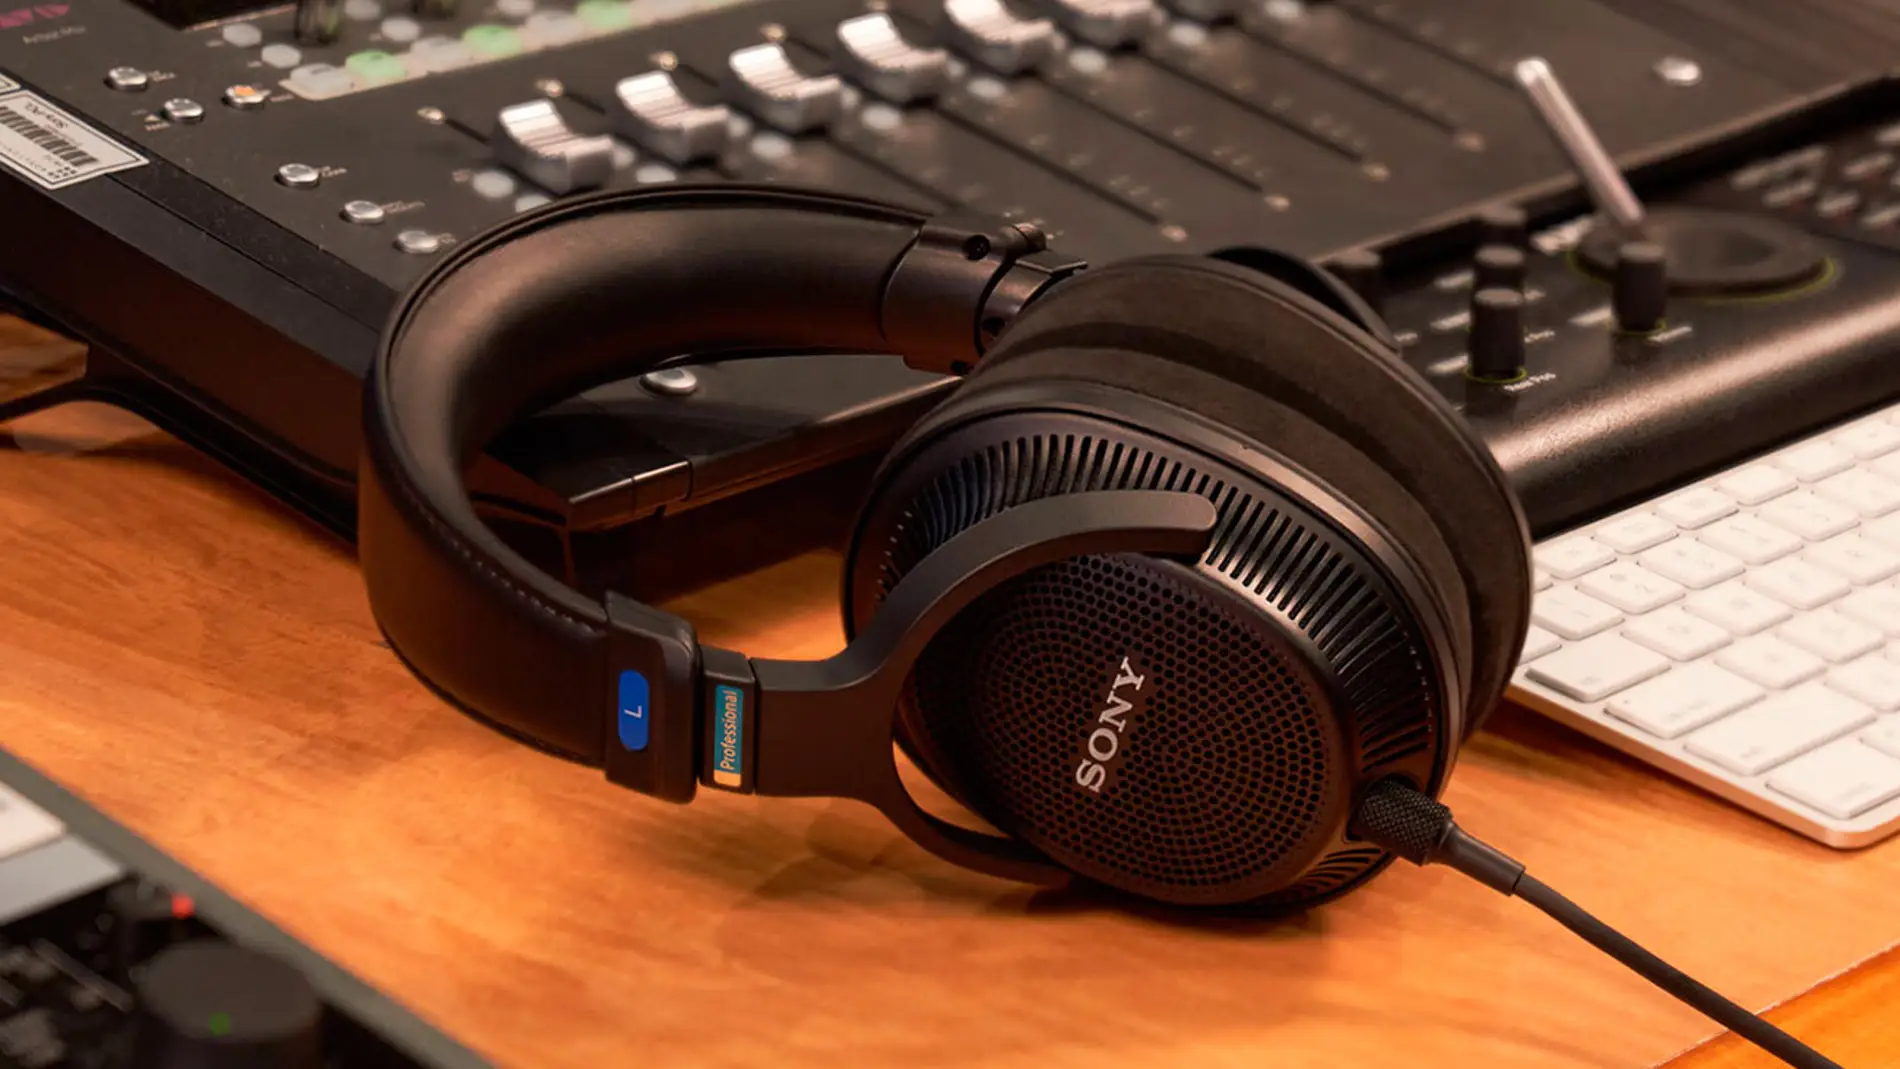 Sony lanza unos nuevos auriculares con calidad de estudio